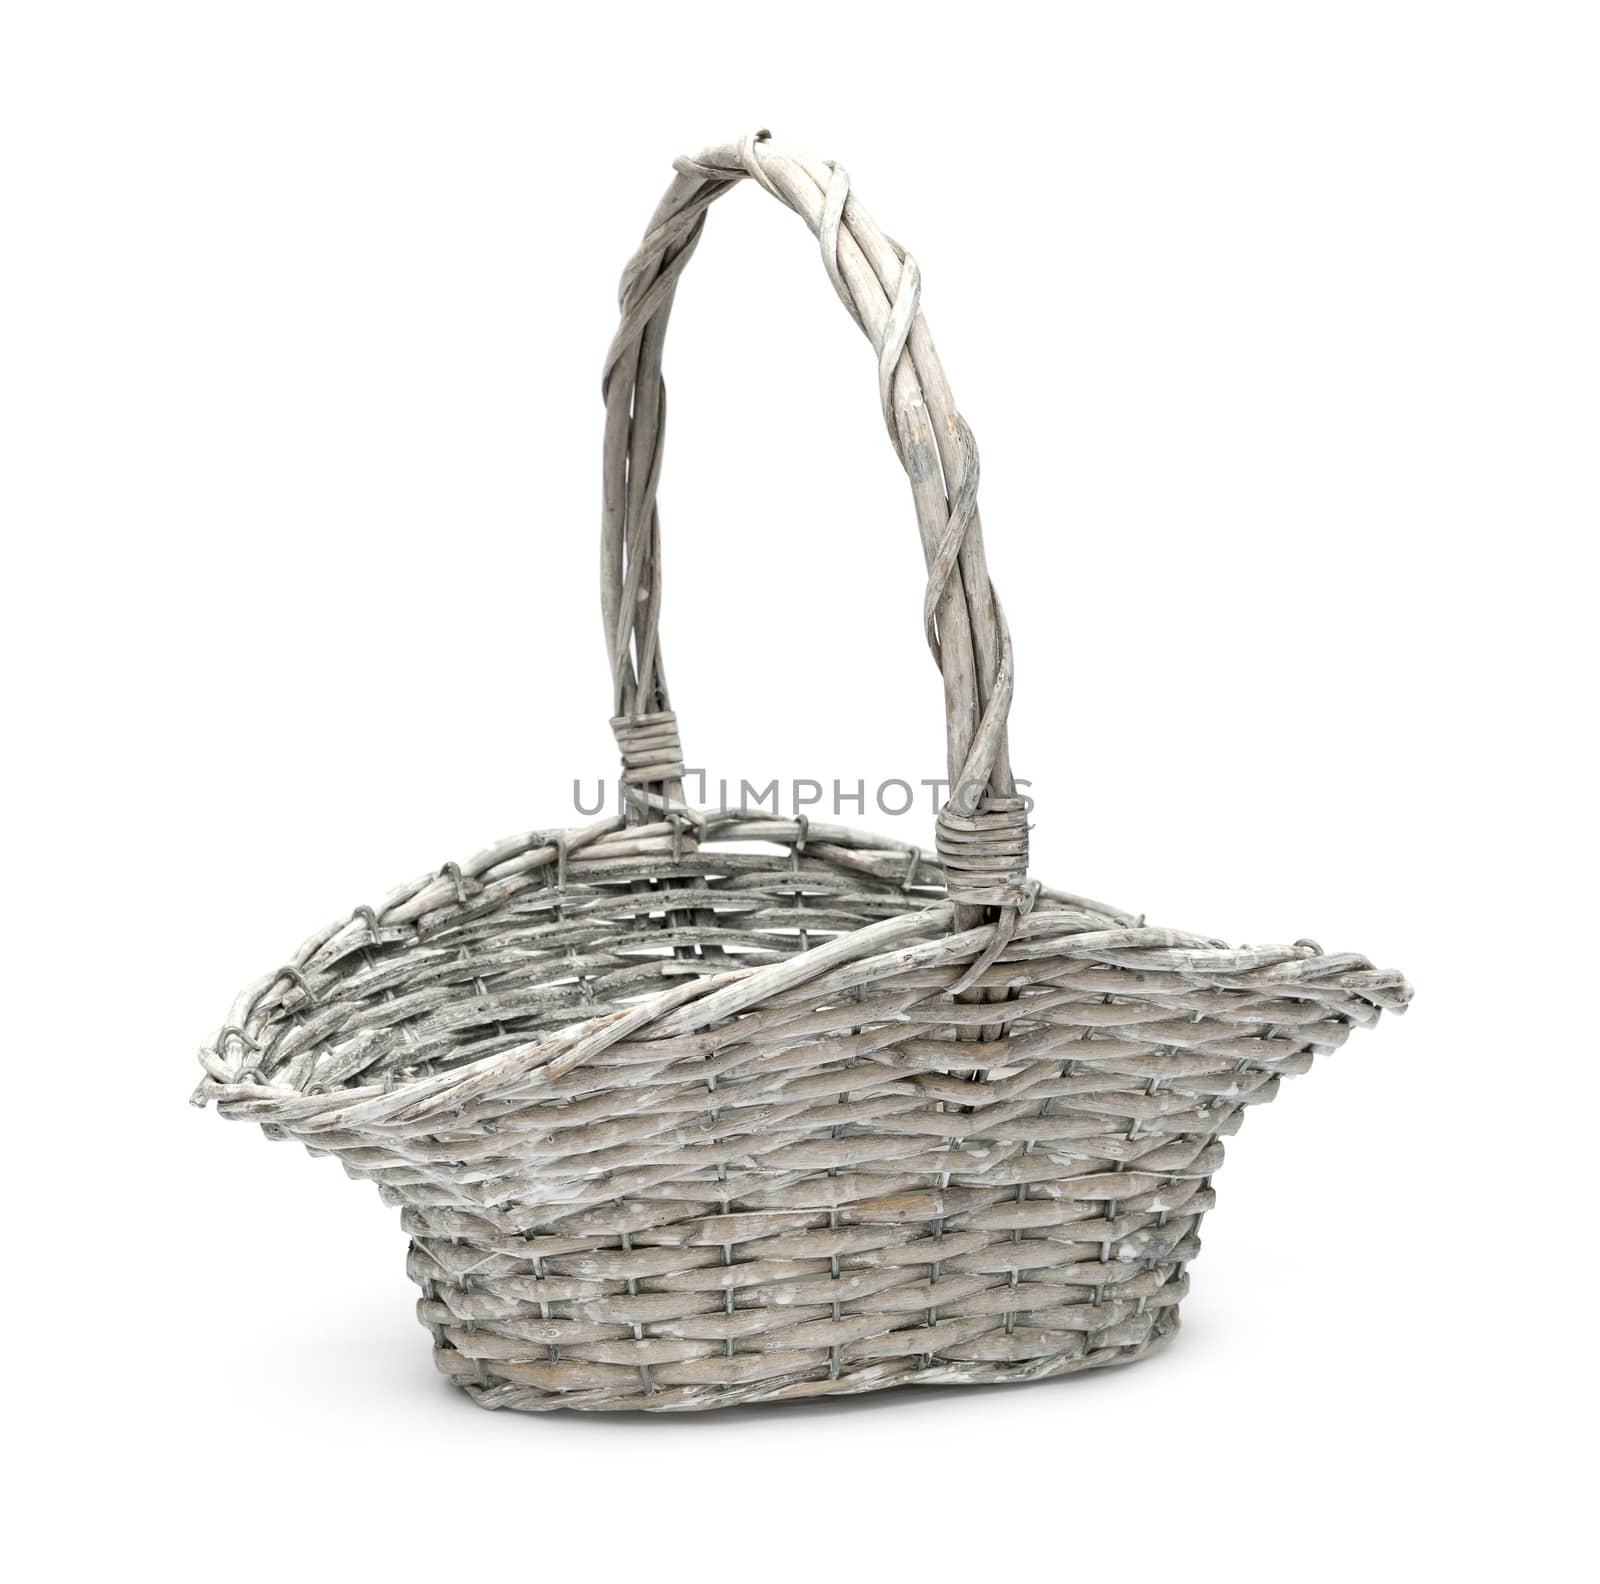 Basket isolated on white background